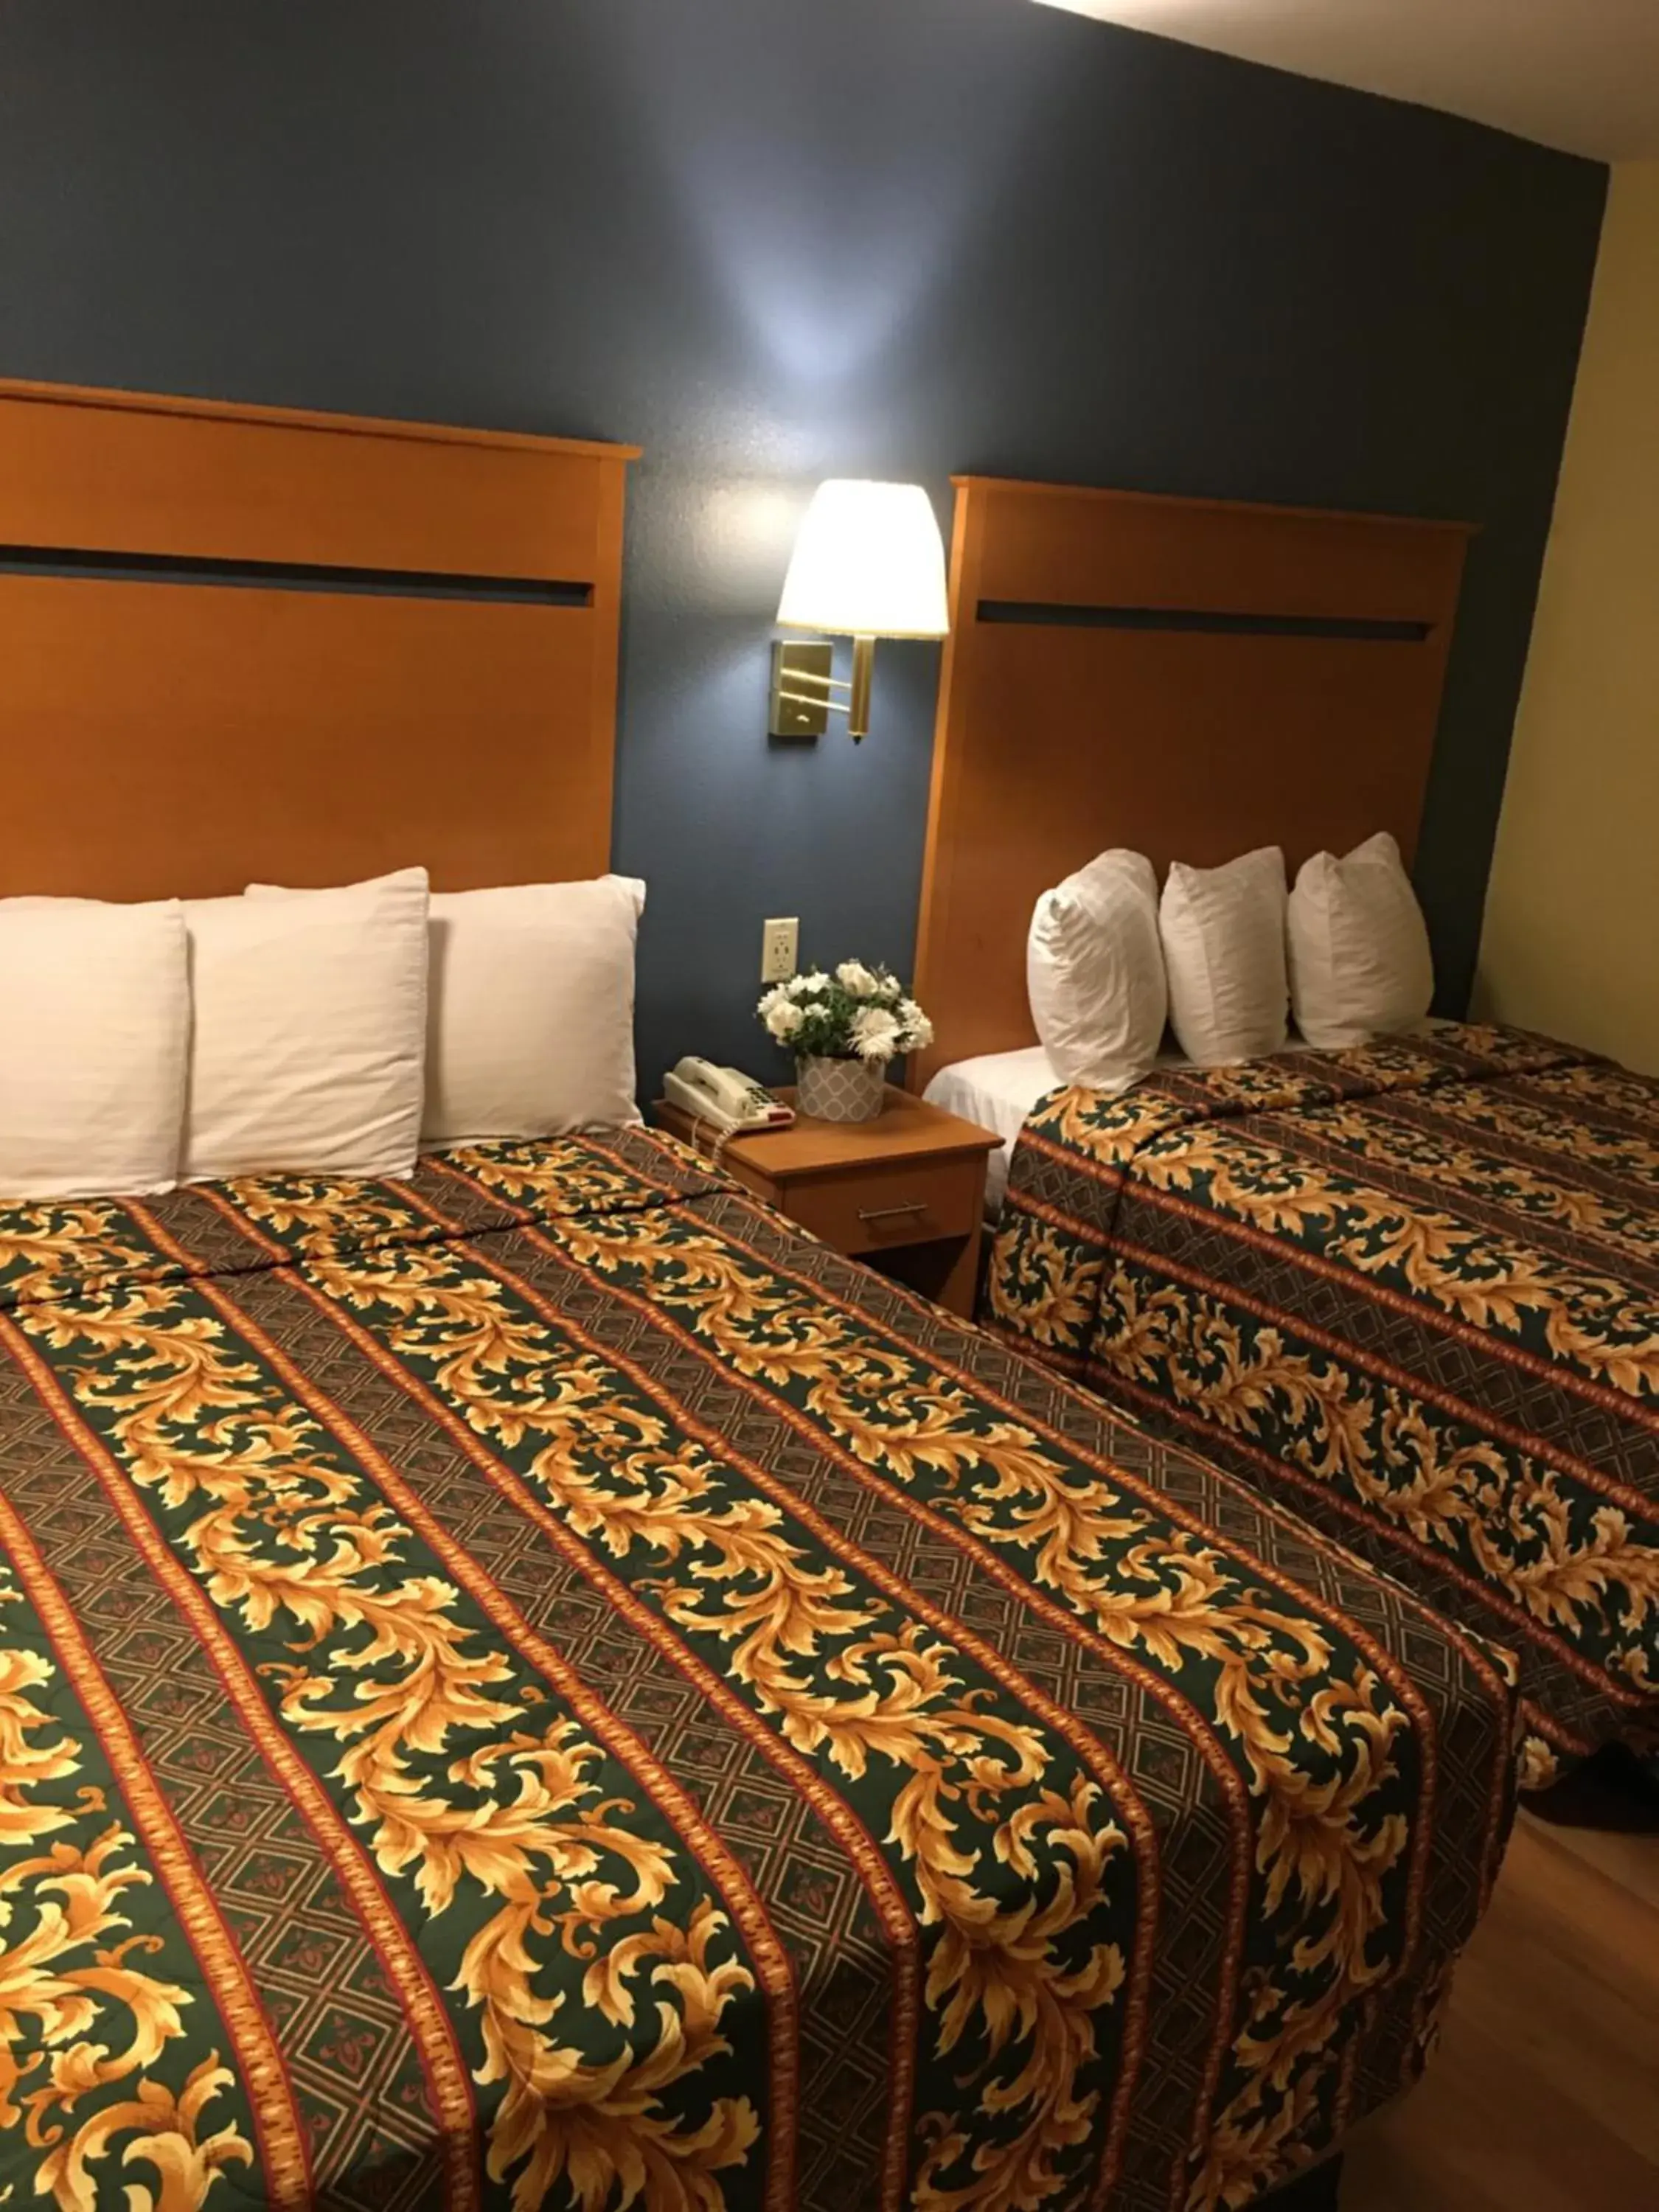 Bedroom, Bed in OceanView Motel